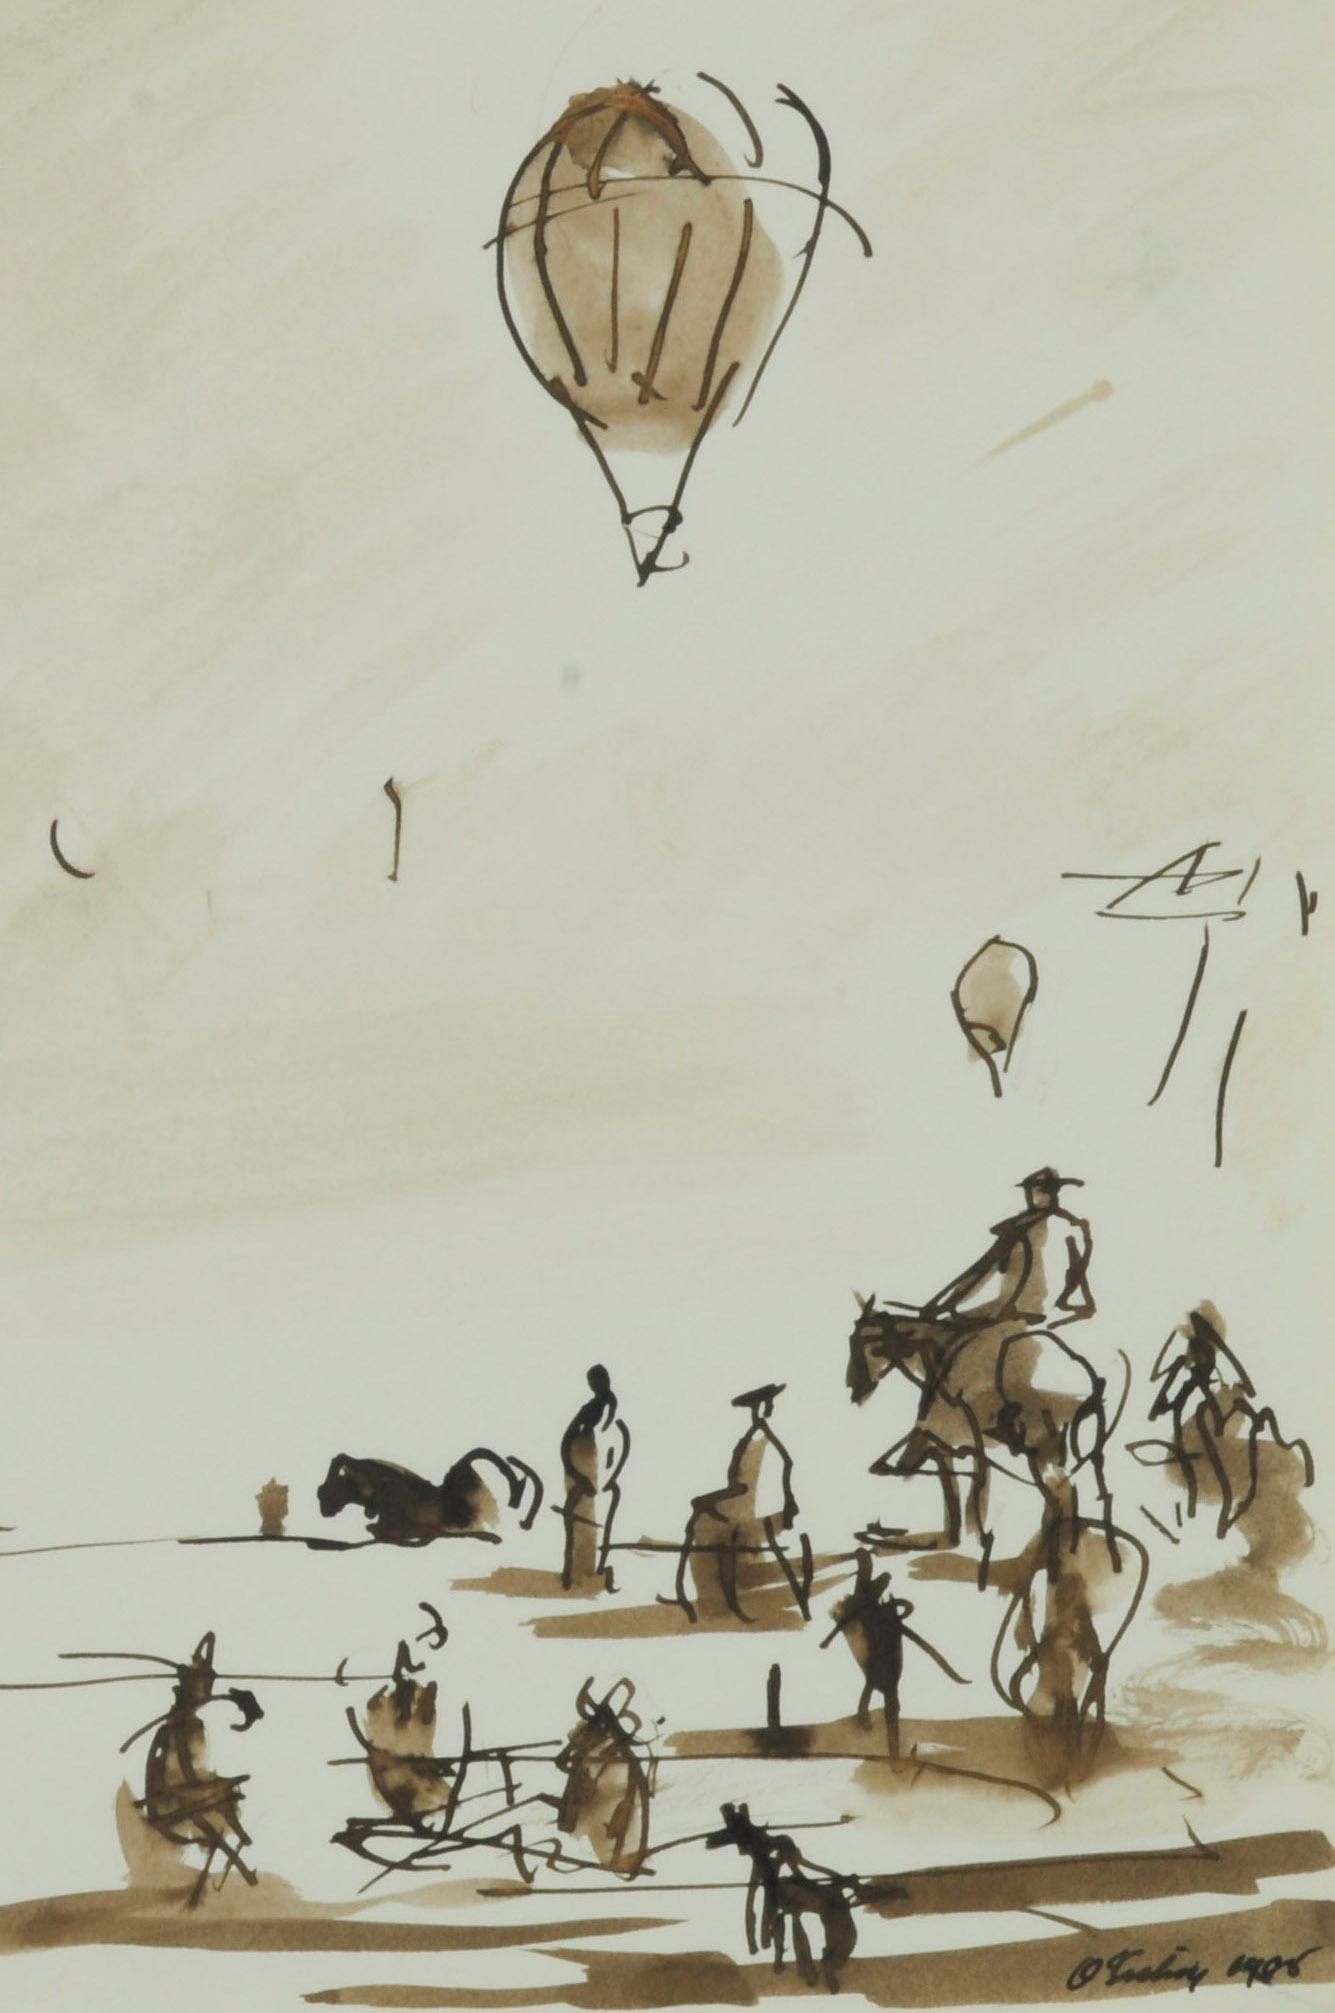 Ohne Titel (Heißluftballonaufstieg und Zuschauer)
Sepia-Lavierung auf Velin, 1985
Signiert und datiert mit Tinte in der rechten unteren Ecke
Aus dem Skizzenbuch des Künstlers von 1985
Wahrscheinlich eine Ansicht von Cape Cod, aufgenommen während